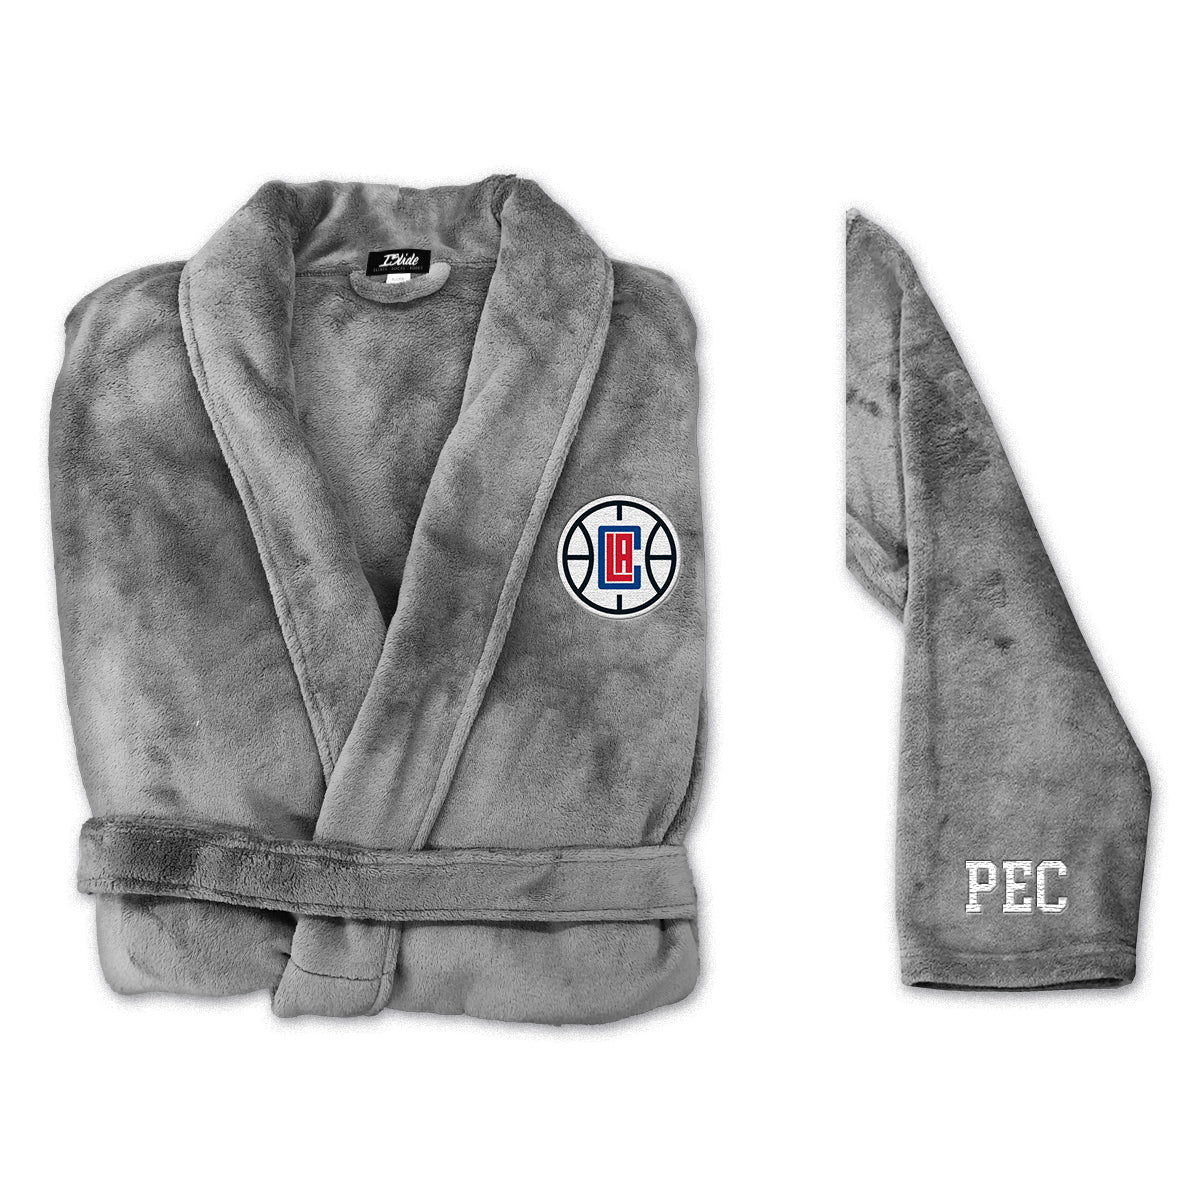 LA Clippers Robe Personalized